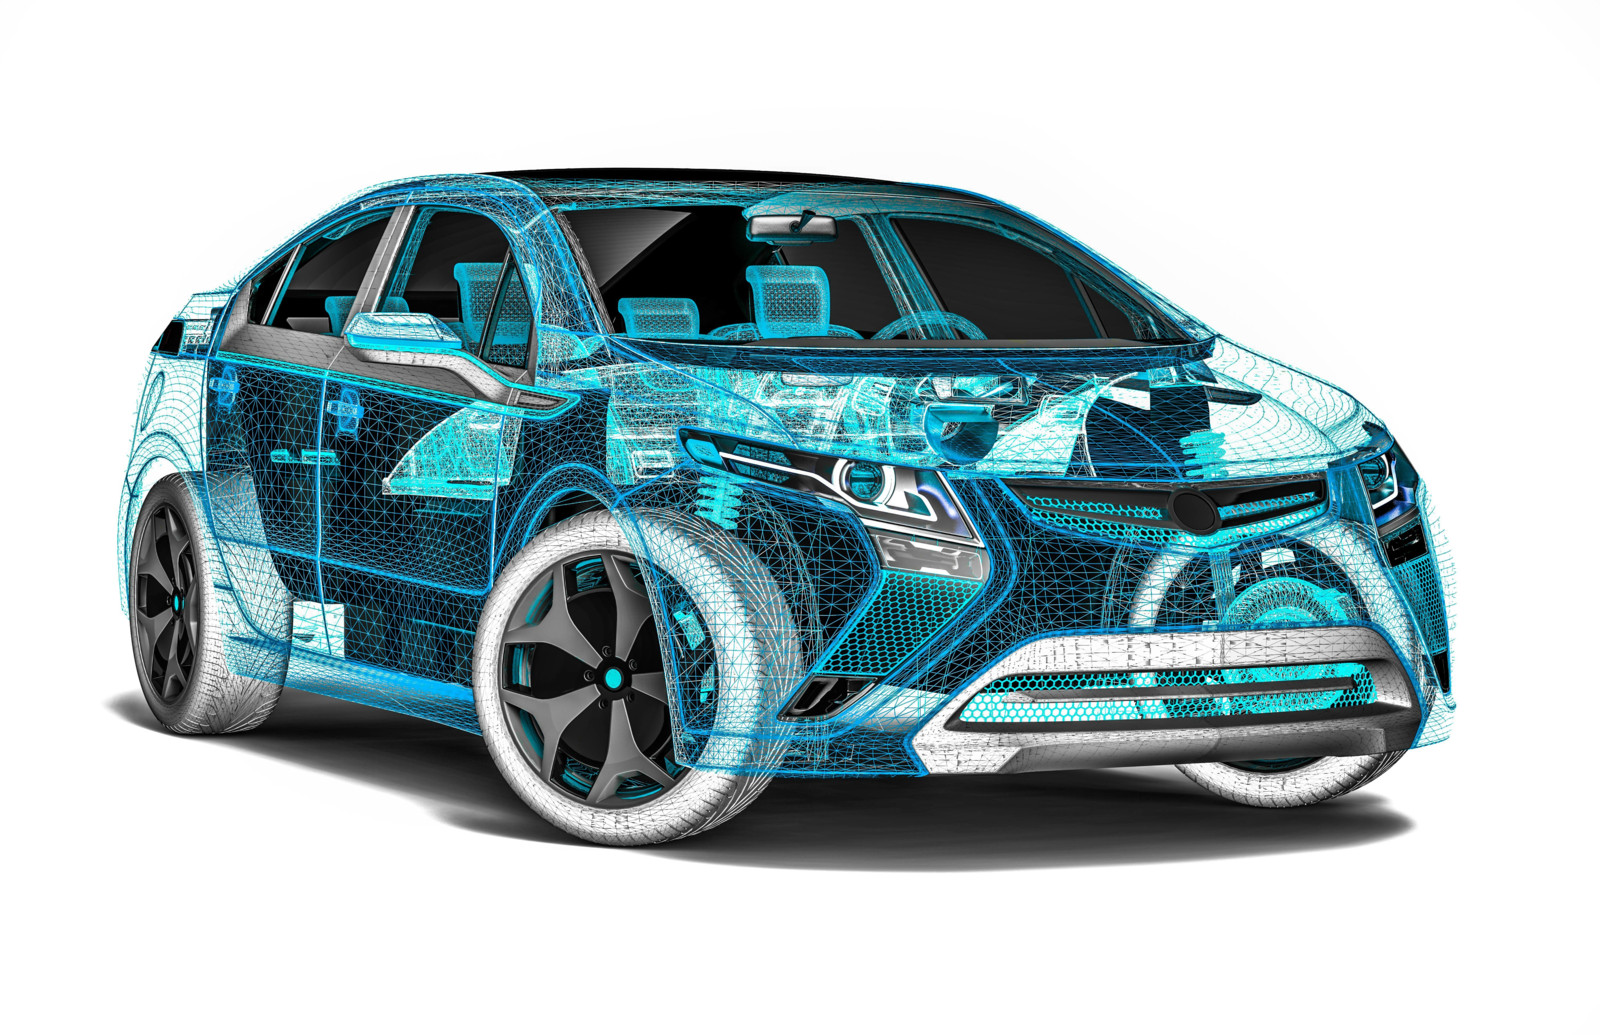 Die Software-definierte Automobiltechnologie schreitet voran – mit direkten Auswirkungen auf potenzielle Geschäftsmodelle.